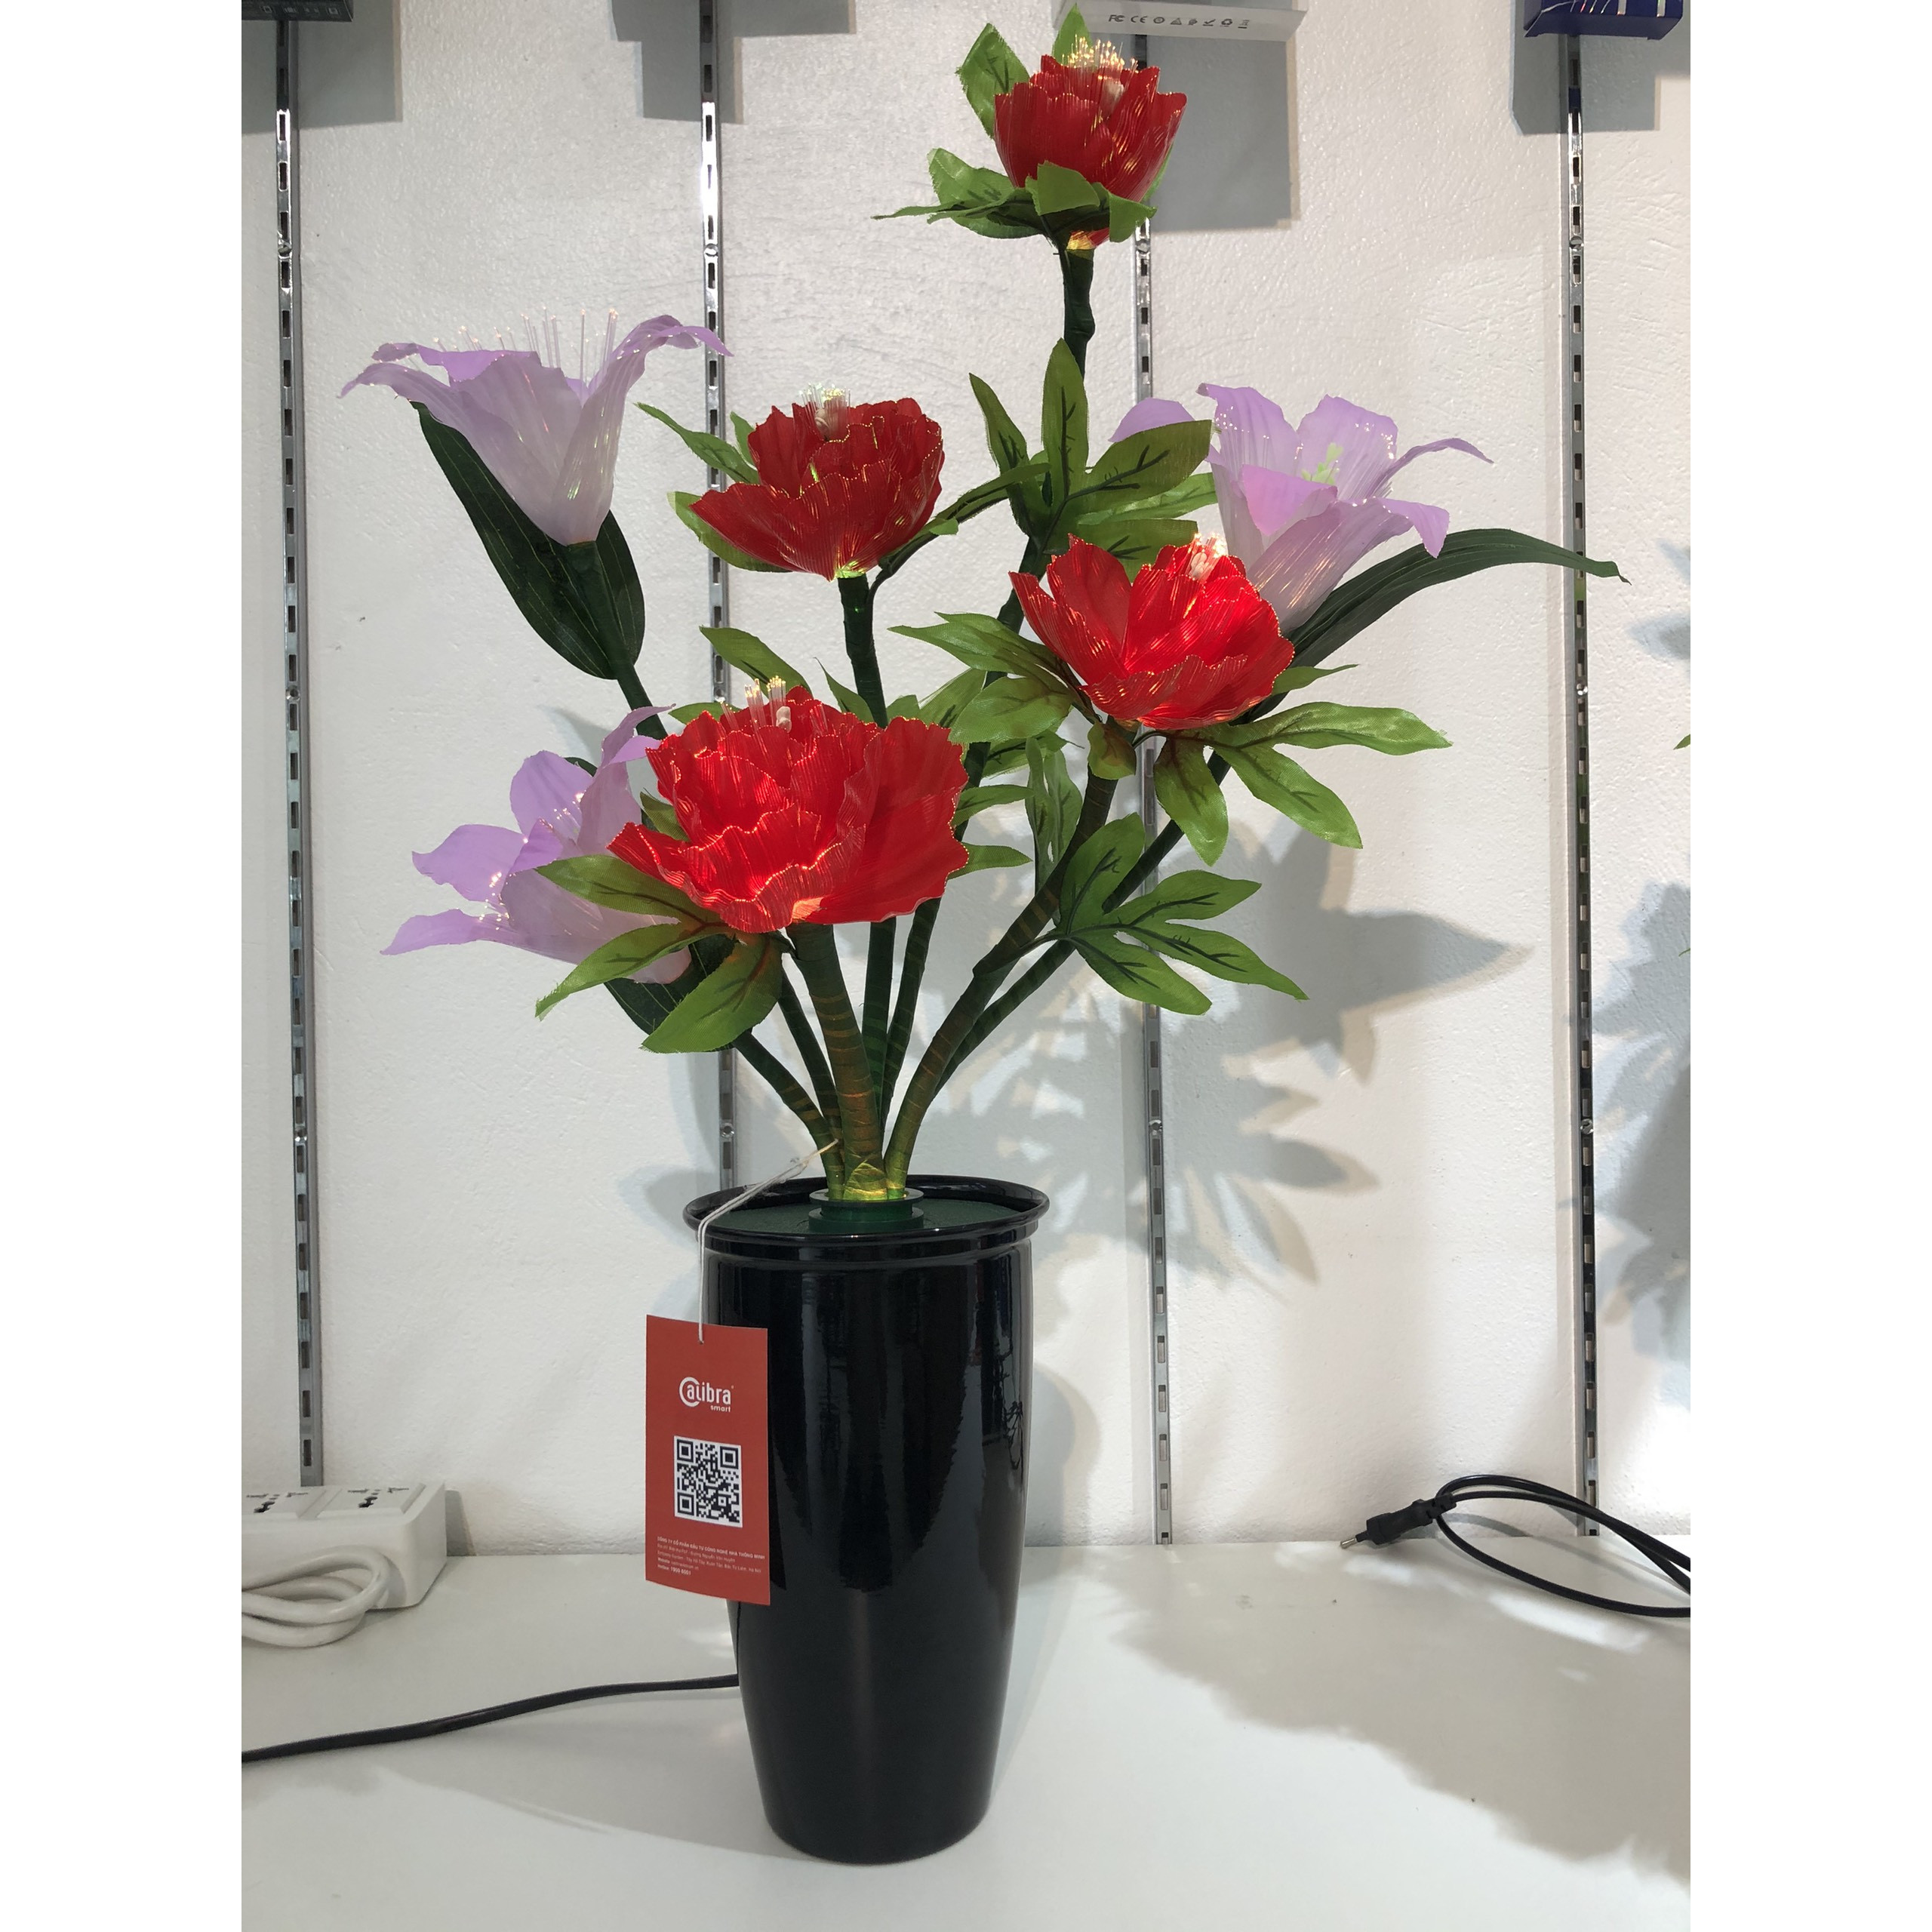 Bình hoa đèn led sợi quang đổi màu - bình hoa trang trí 65cm cắm điện 220V - BH138